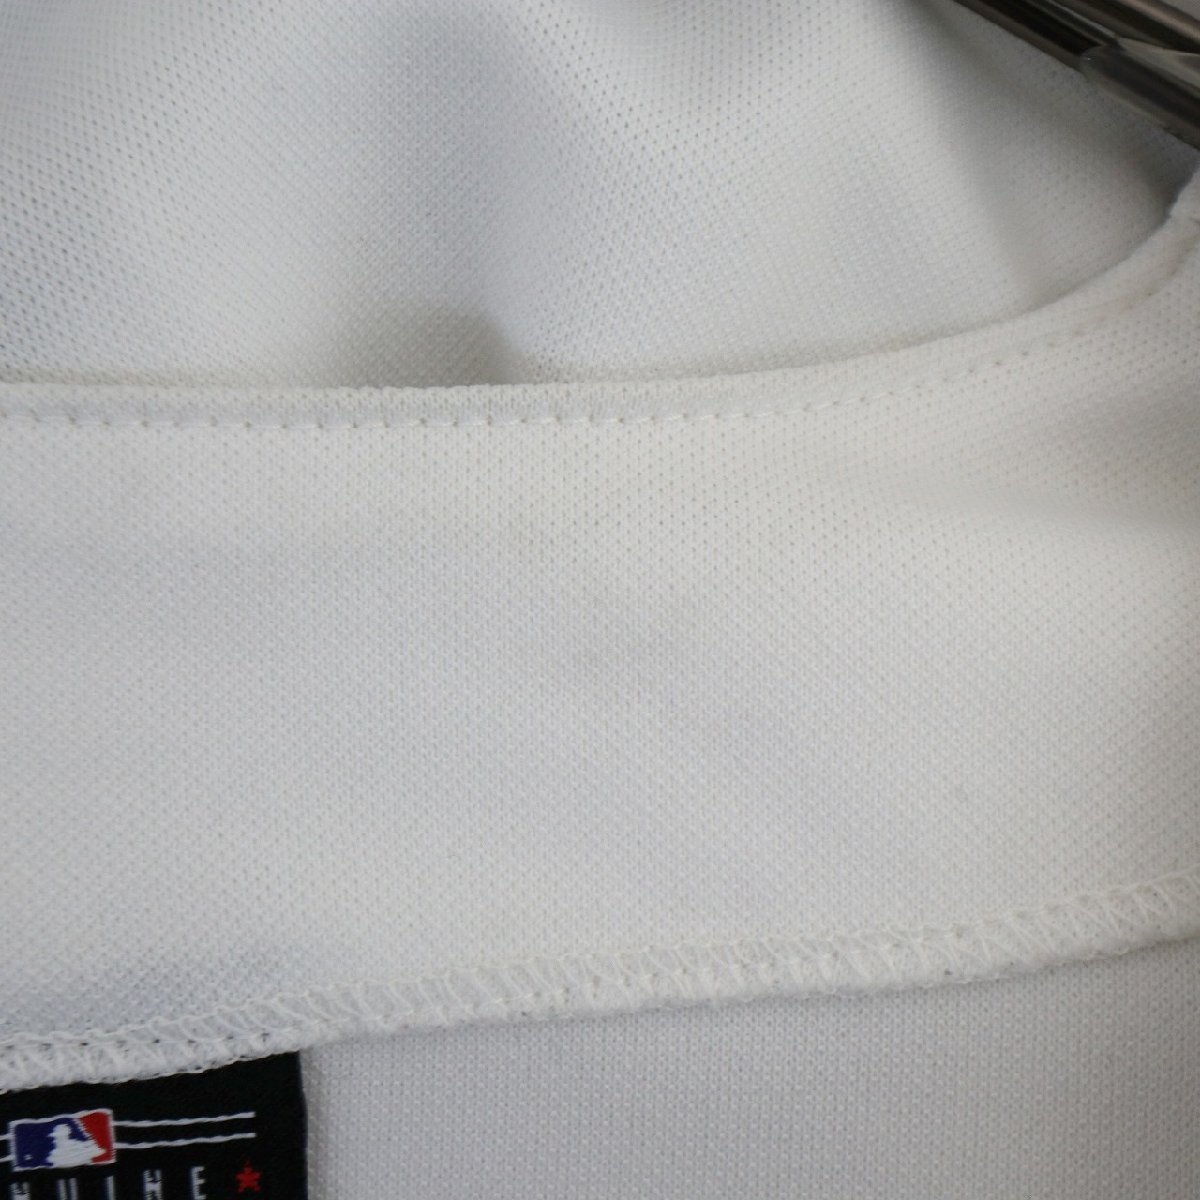 SALE///// Majestic MLB テキサスレンジャーズ ベースボールシャツ ユニフォーム 野球 ユニフォーム ホワイト ( メンズ M ) N1894_画像7